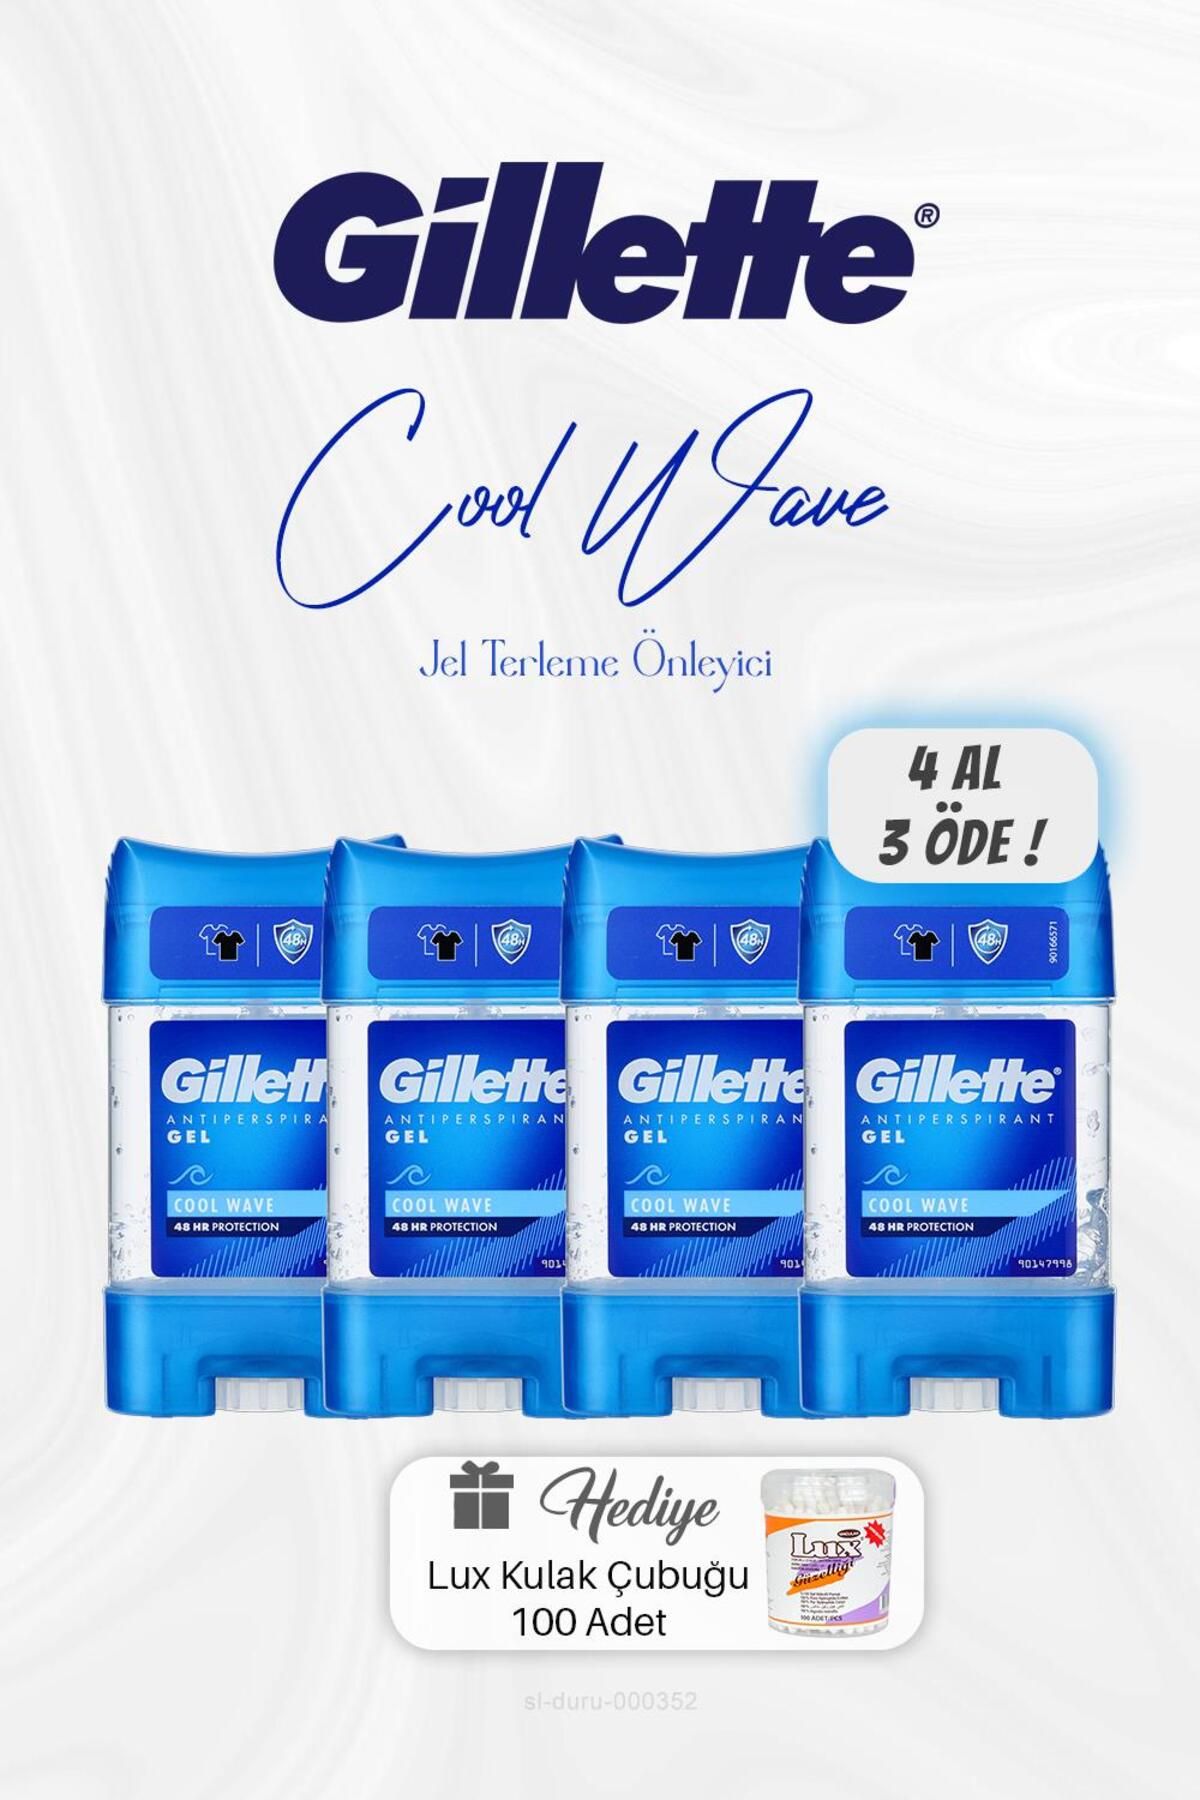 Gillette 4 AL 3 ÖDE Gillette Jel Cool Wave Terleme Önleyici 70 ml, Kulak Çubuğu Hediyeli